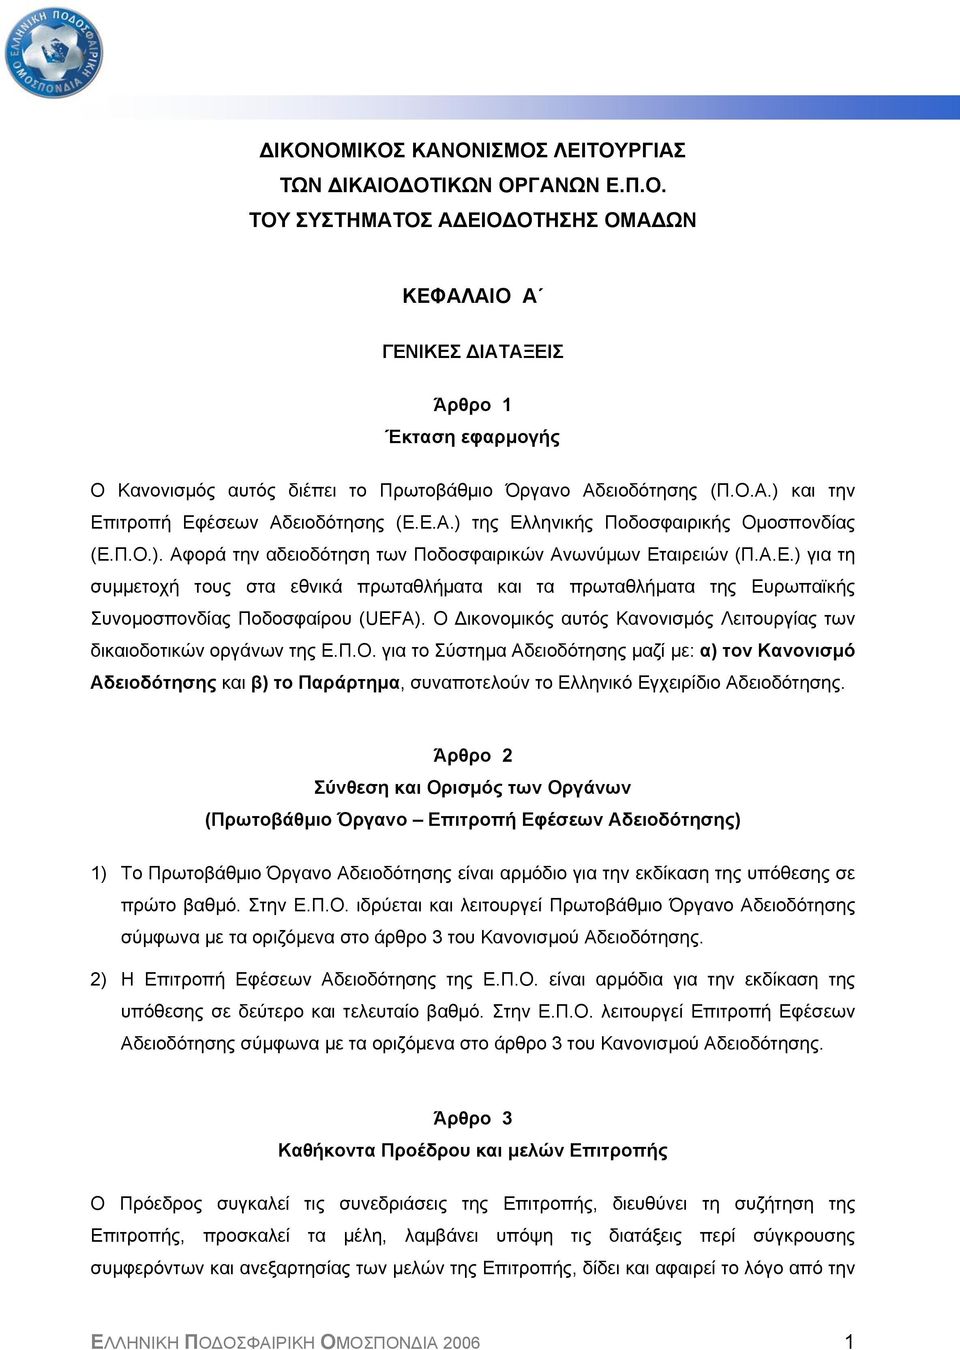 Ο ικονοµικός αυτός Κανονισµός Λειτουργίας των δικαιοδοτικών οργάνων της Ε.Π.Ο. για το Σύστηµα Αδειοδότησης µαζί µε: α) τον Κανονισµό Αδειοδότησης και β) το Παράρτηµα, συναποτελούν το Ελληνικό Εγχειρίδιο Αδειοδότησης.